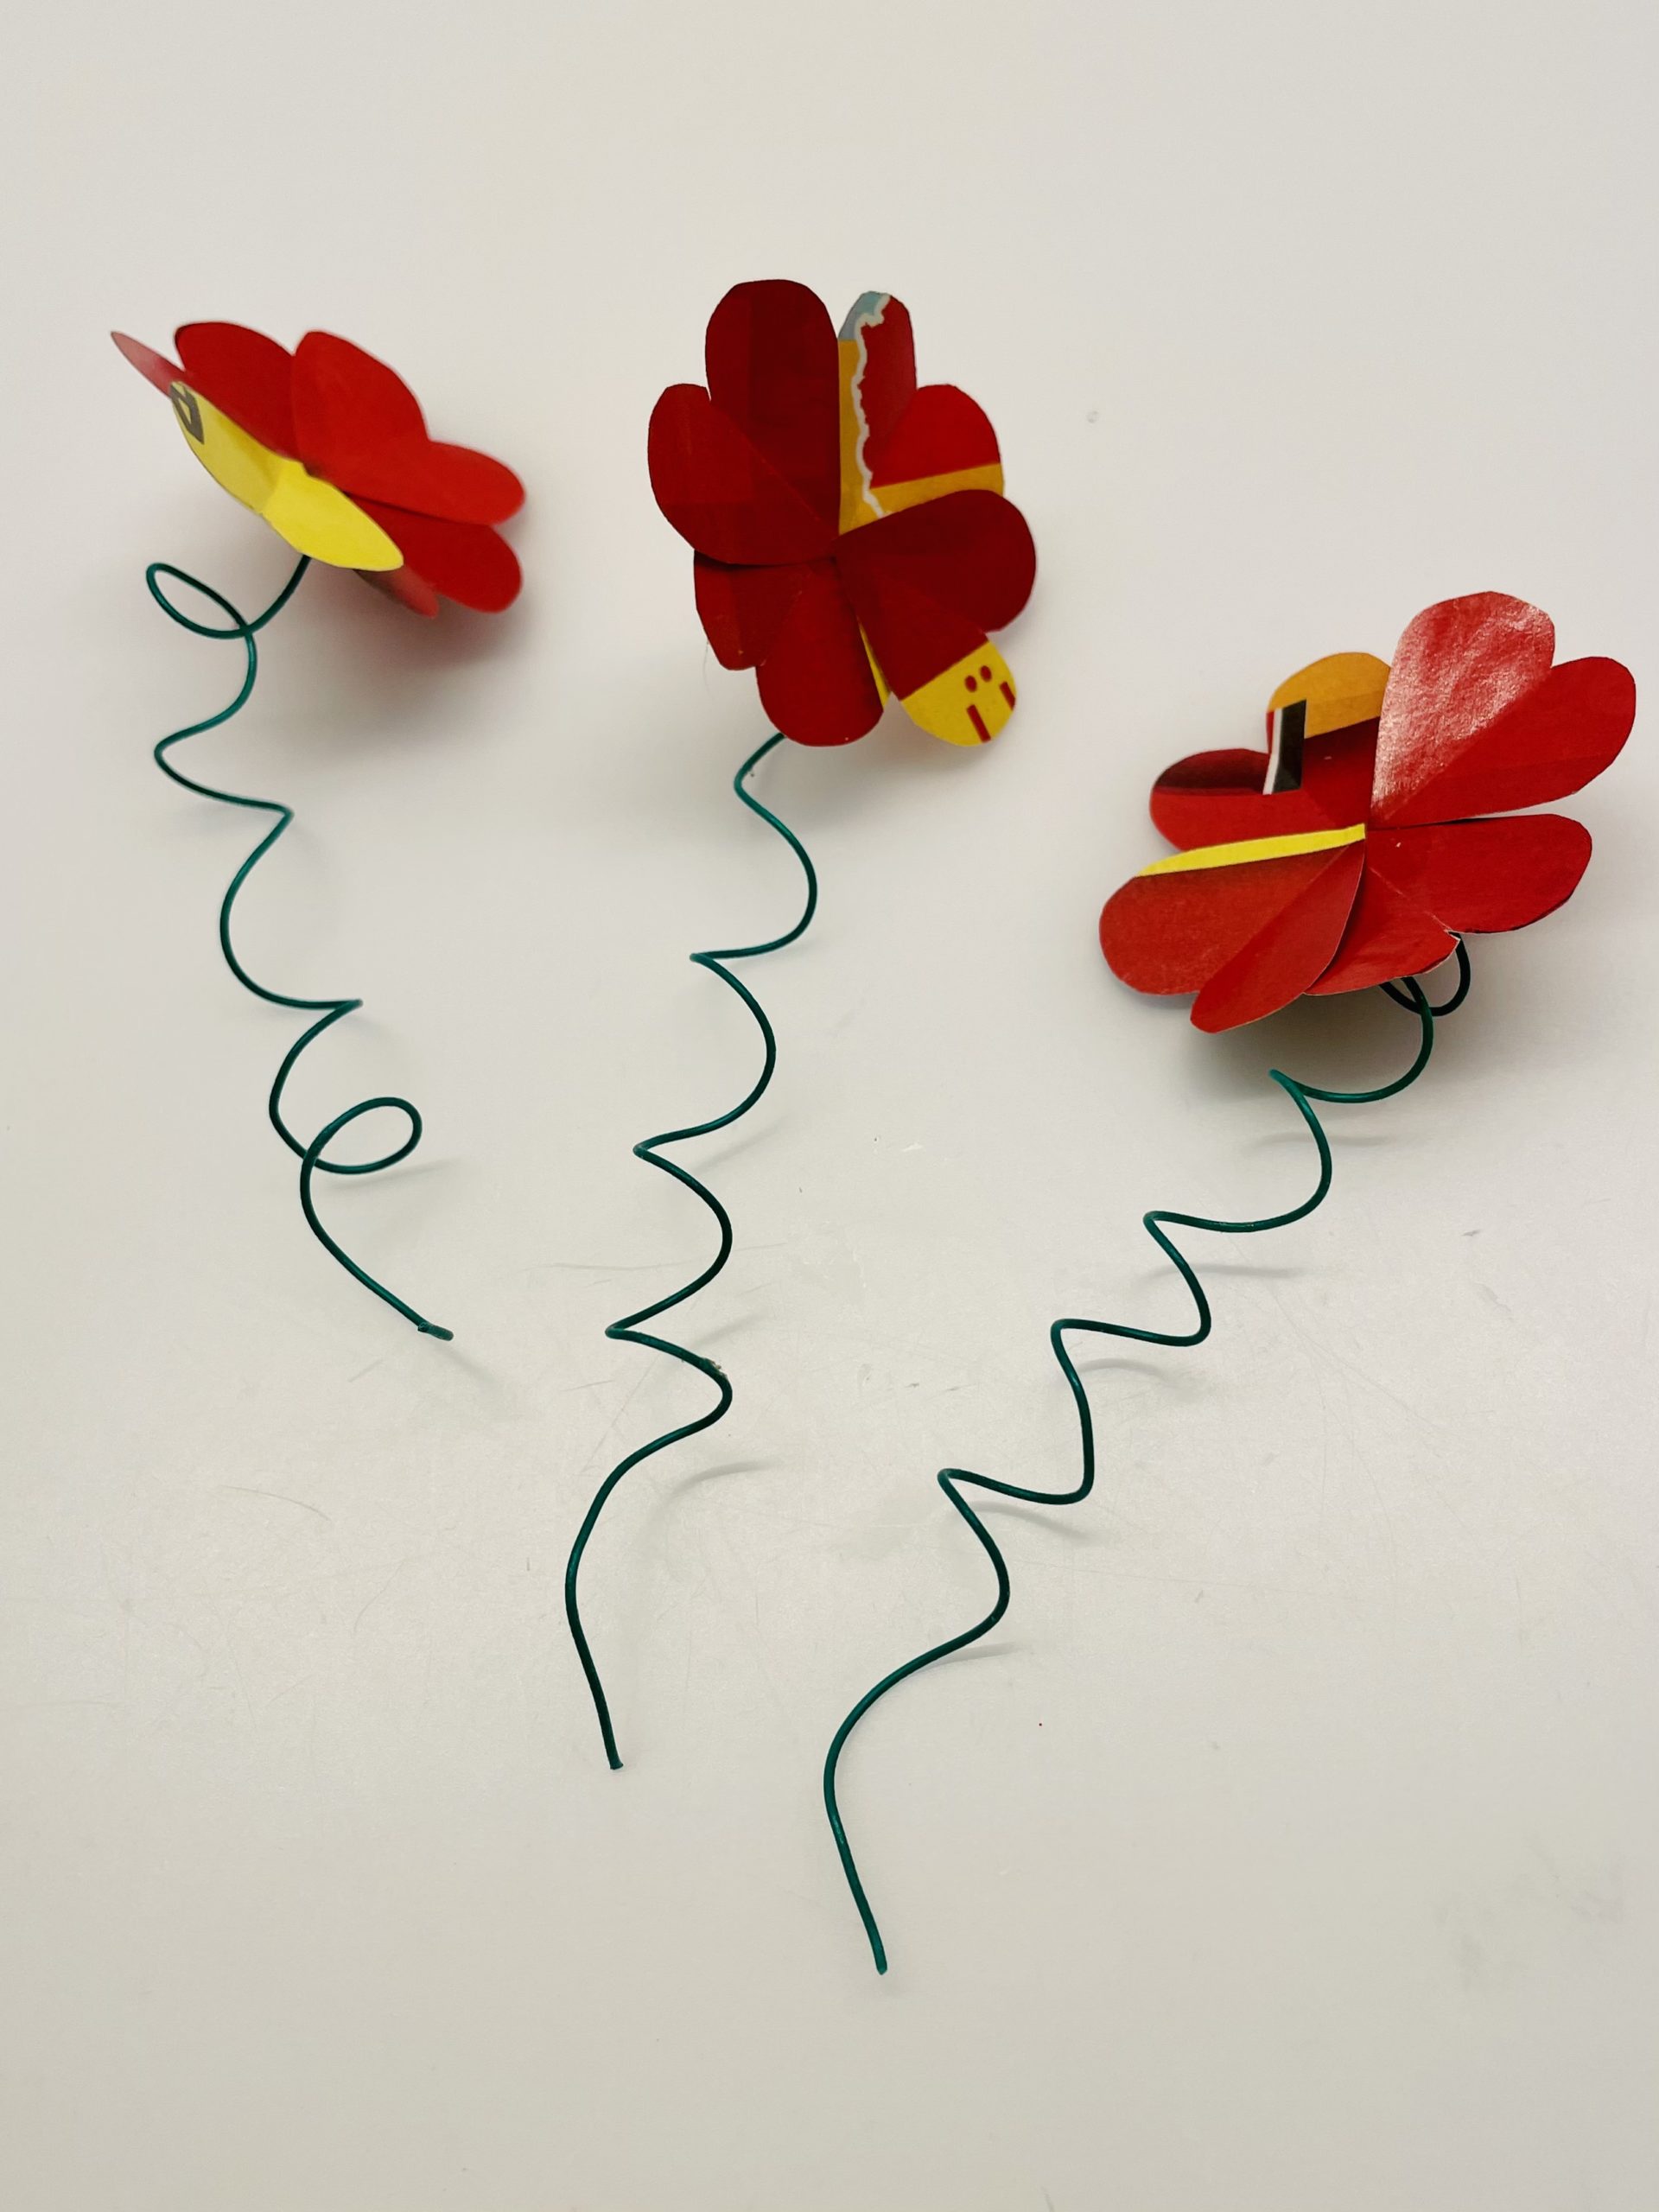 Bild zum Schritt 16 für das Bastel- und DIY-Abenteuer für Kinder: 'Die Papierblumen sind fertig.'